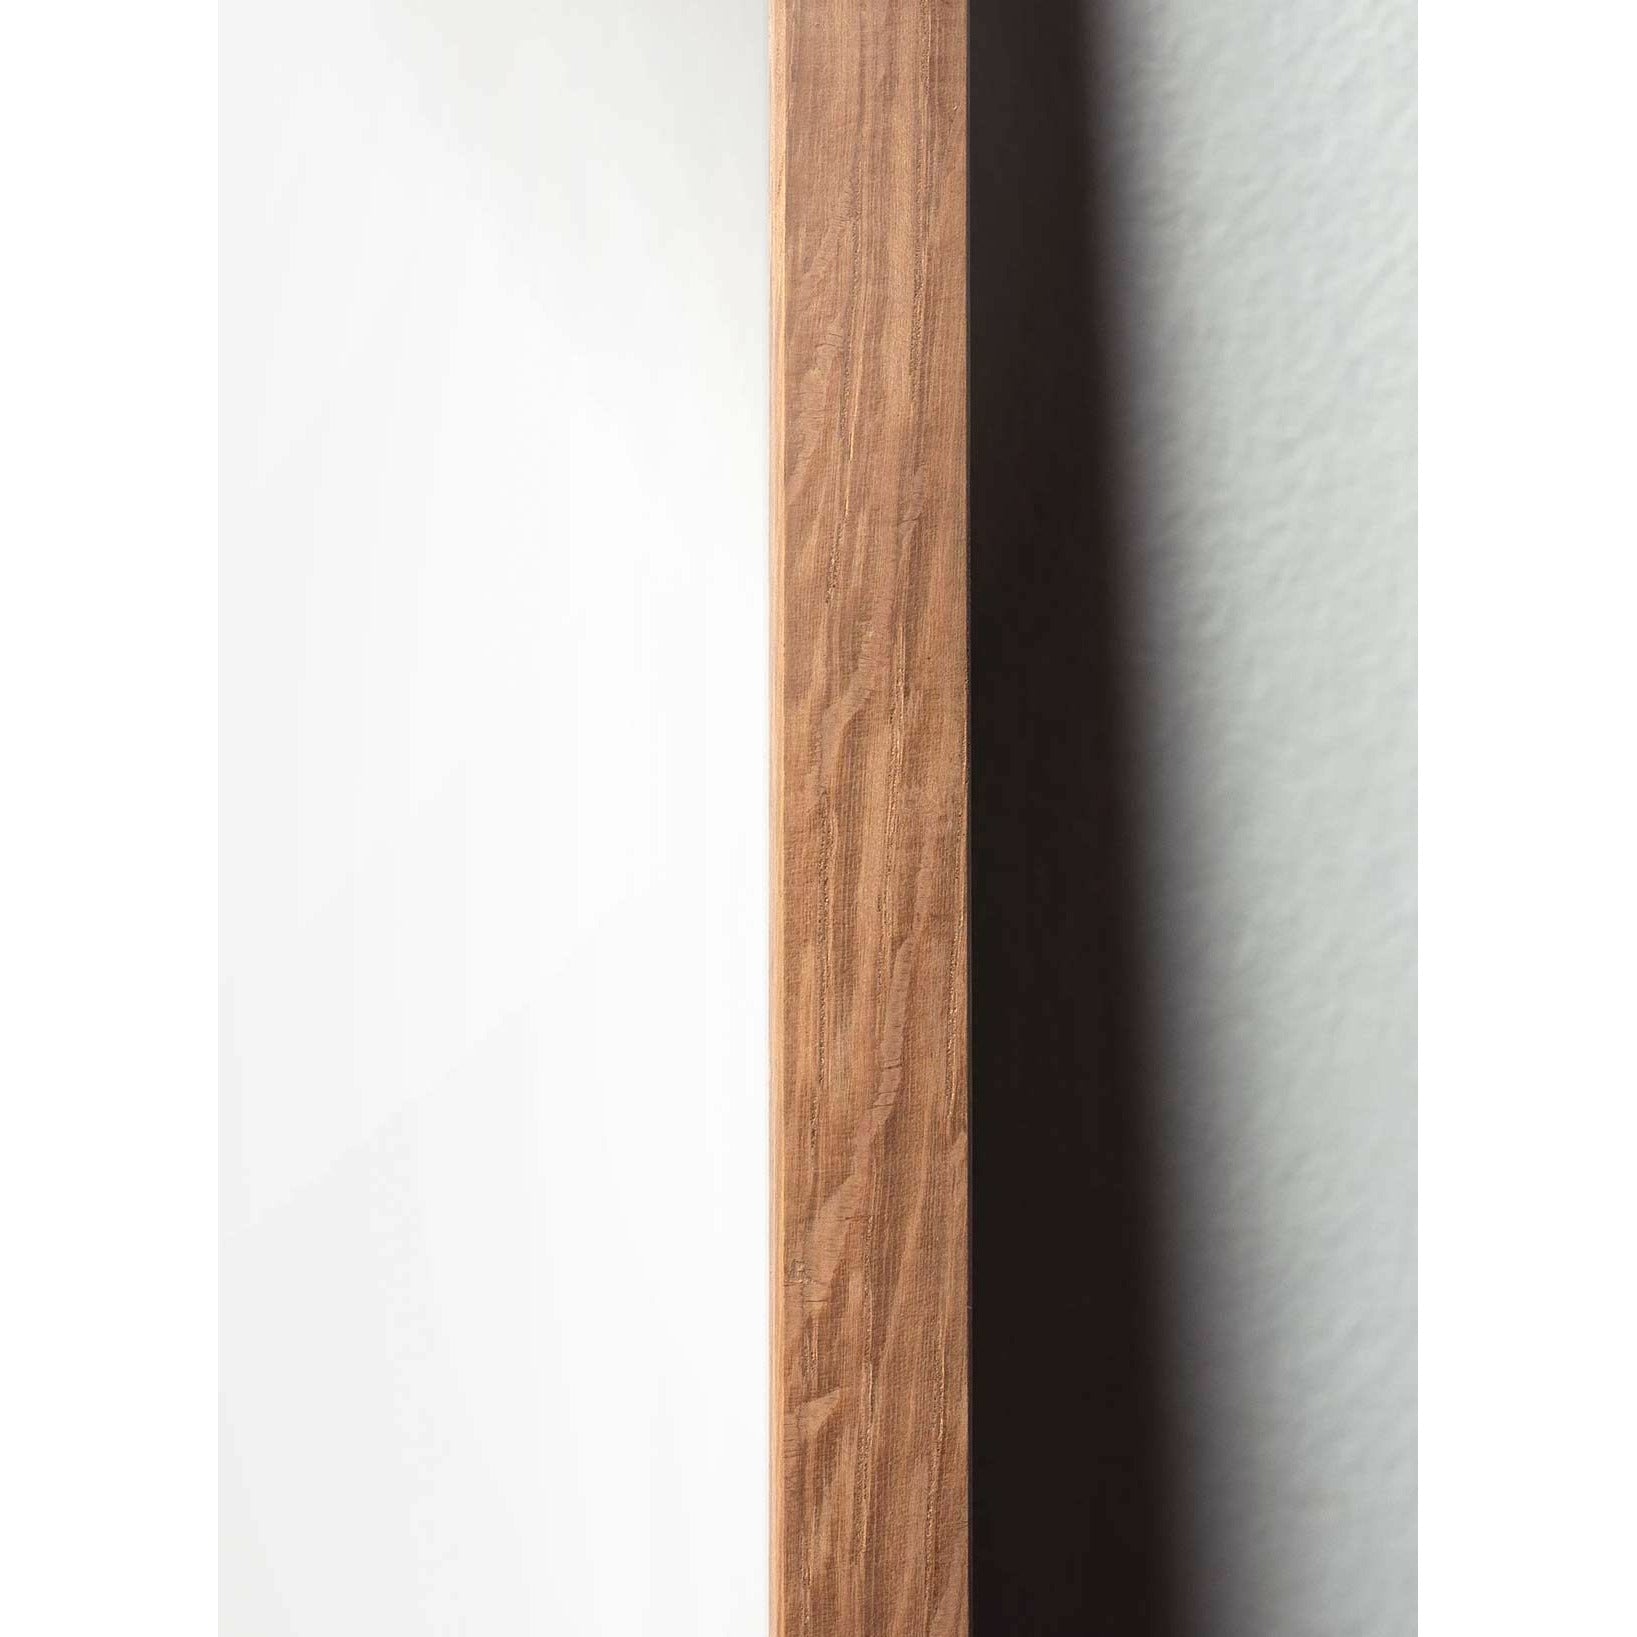 Póster clásico de hormigas de creación, marco hecho de madera clara de 30x40 cm, fondo blanco